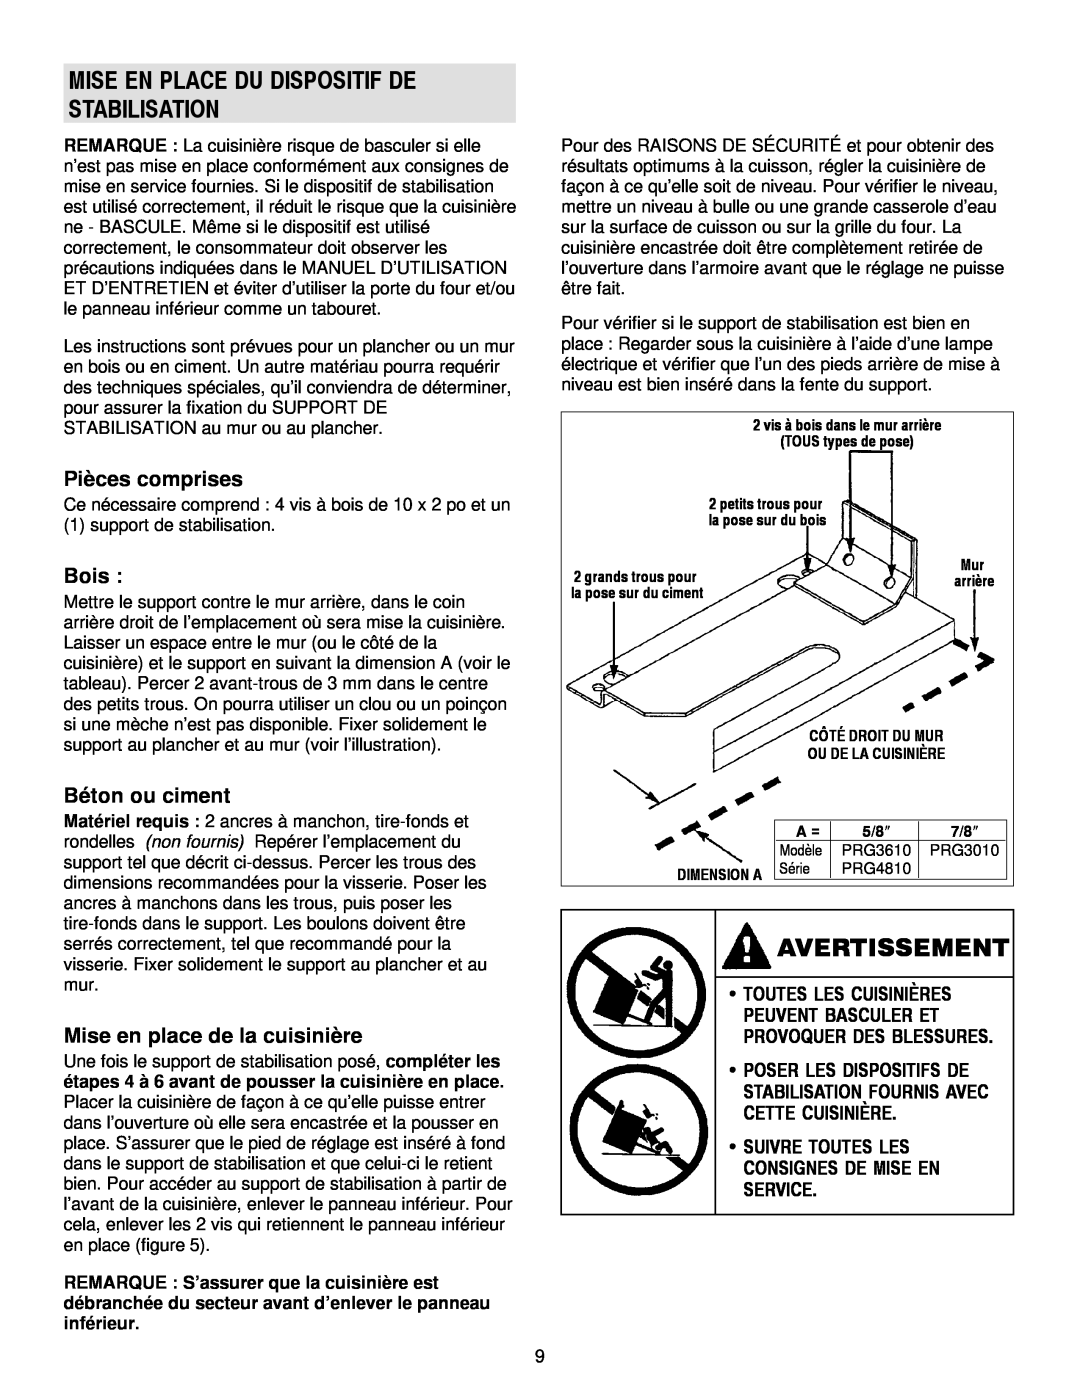 Jenn-Air 30, 36 manual Avertissement, Mise En Place Du Dispositif De Stabilisation, Pièces comprises, Bois, Béton ou ciment 